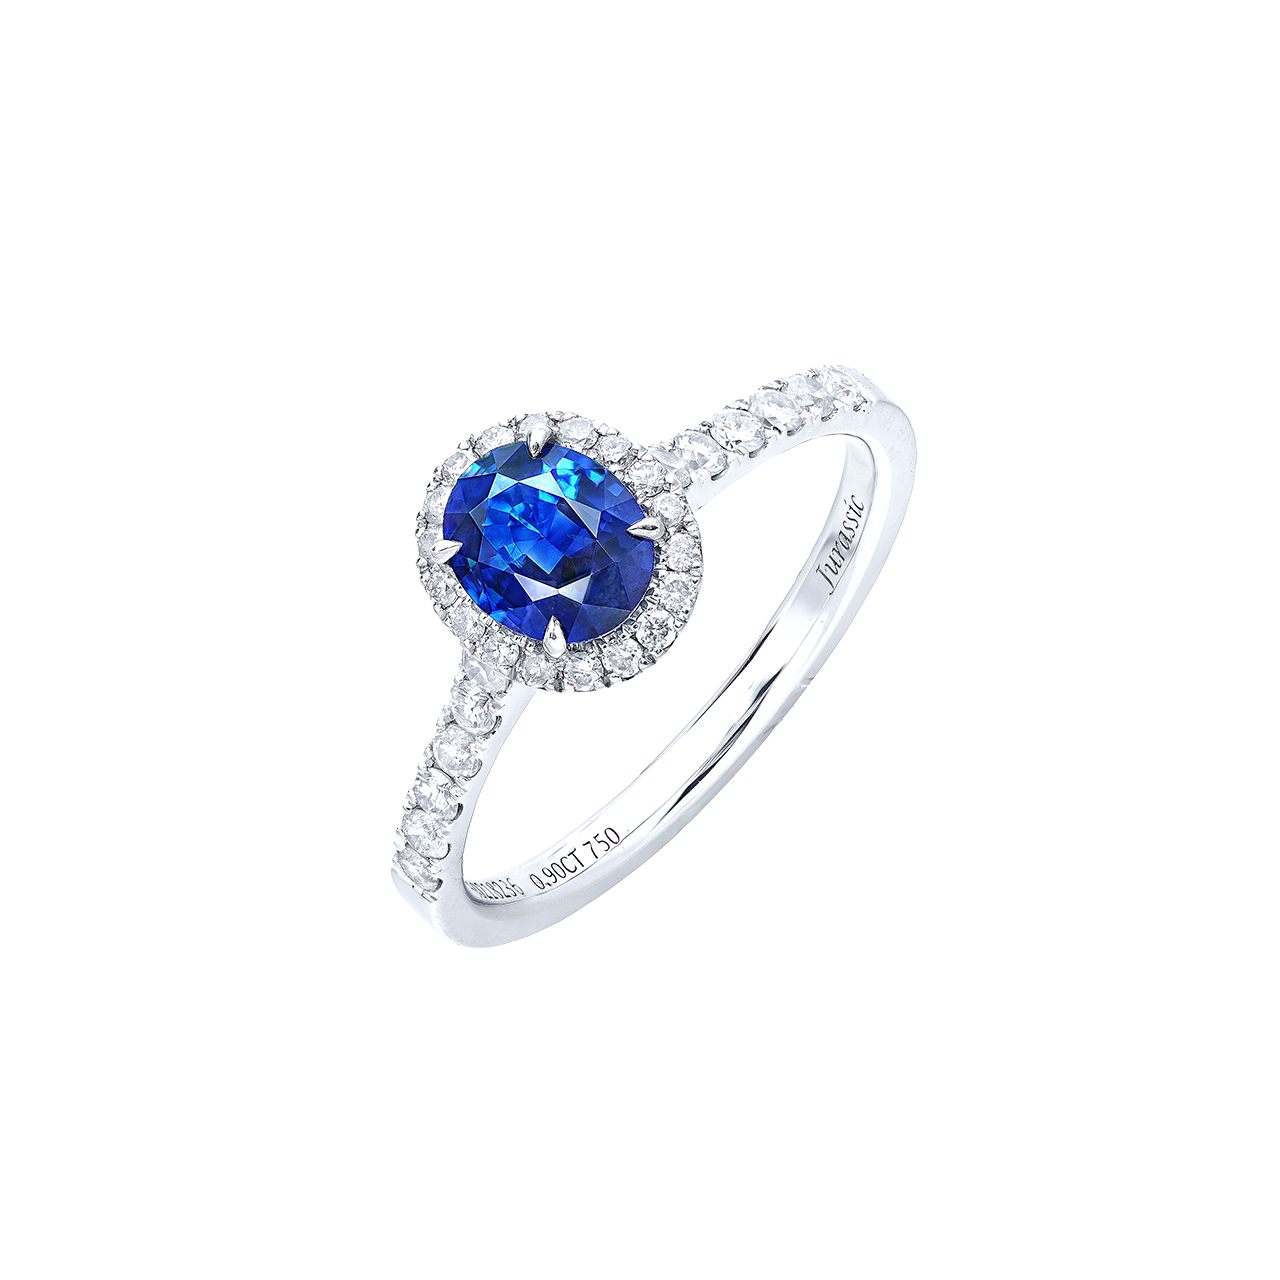 0.90克拉 無燒皇家藍藍寶石鑽戒
Royal Blue Sapphire and 
Diamond Ring